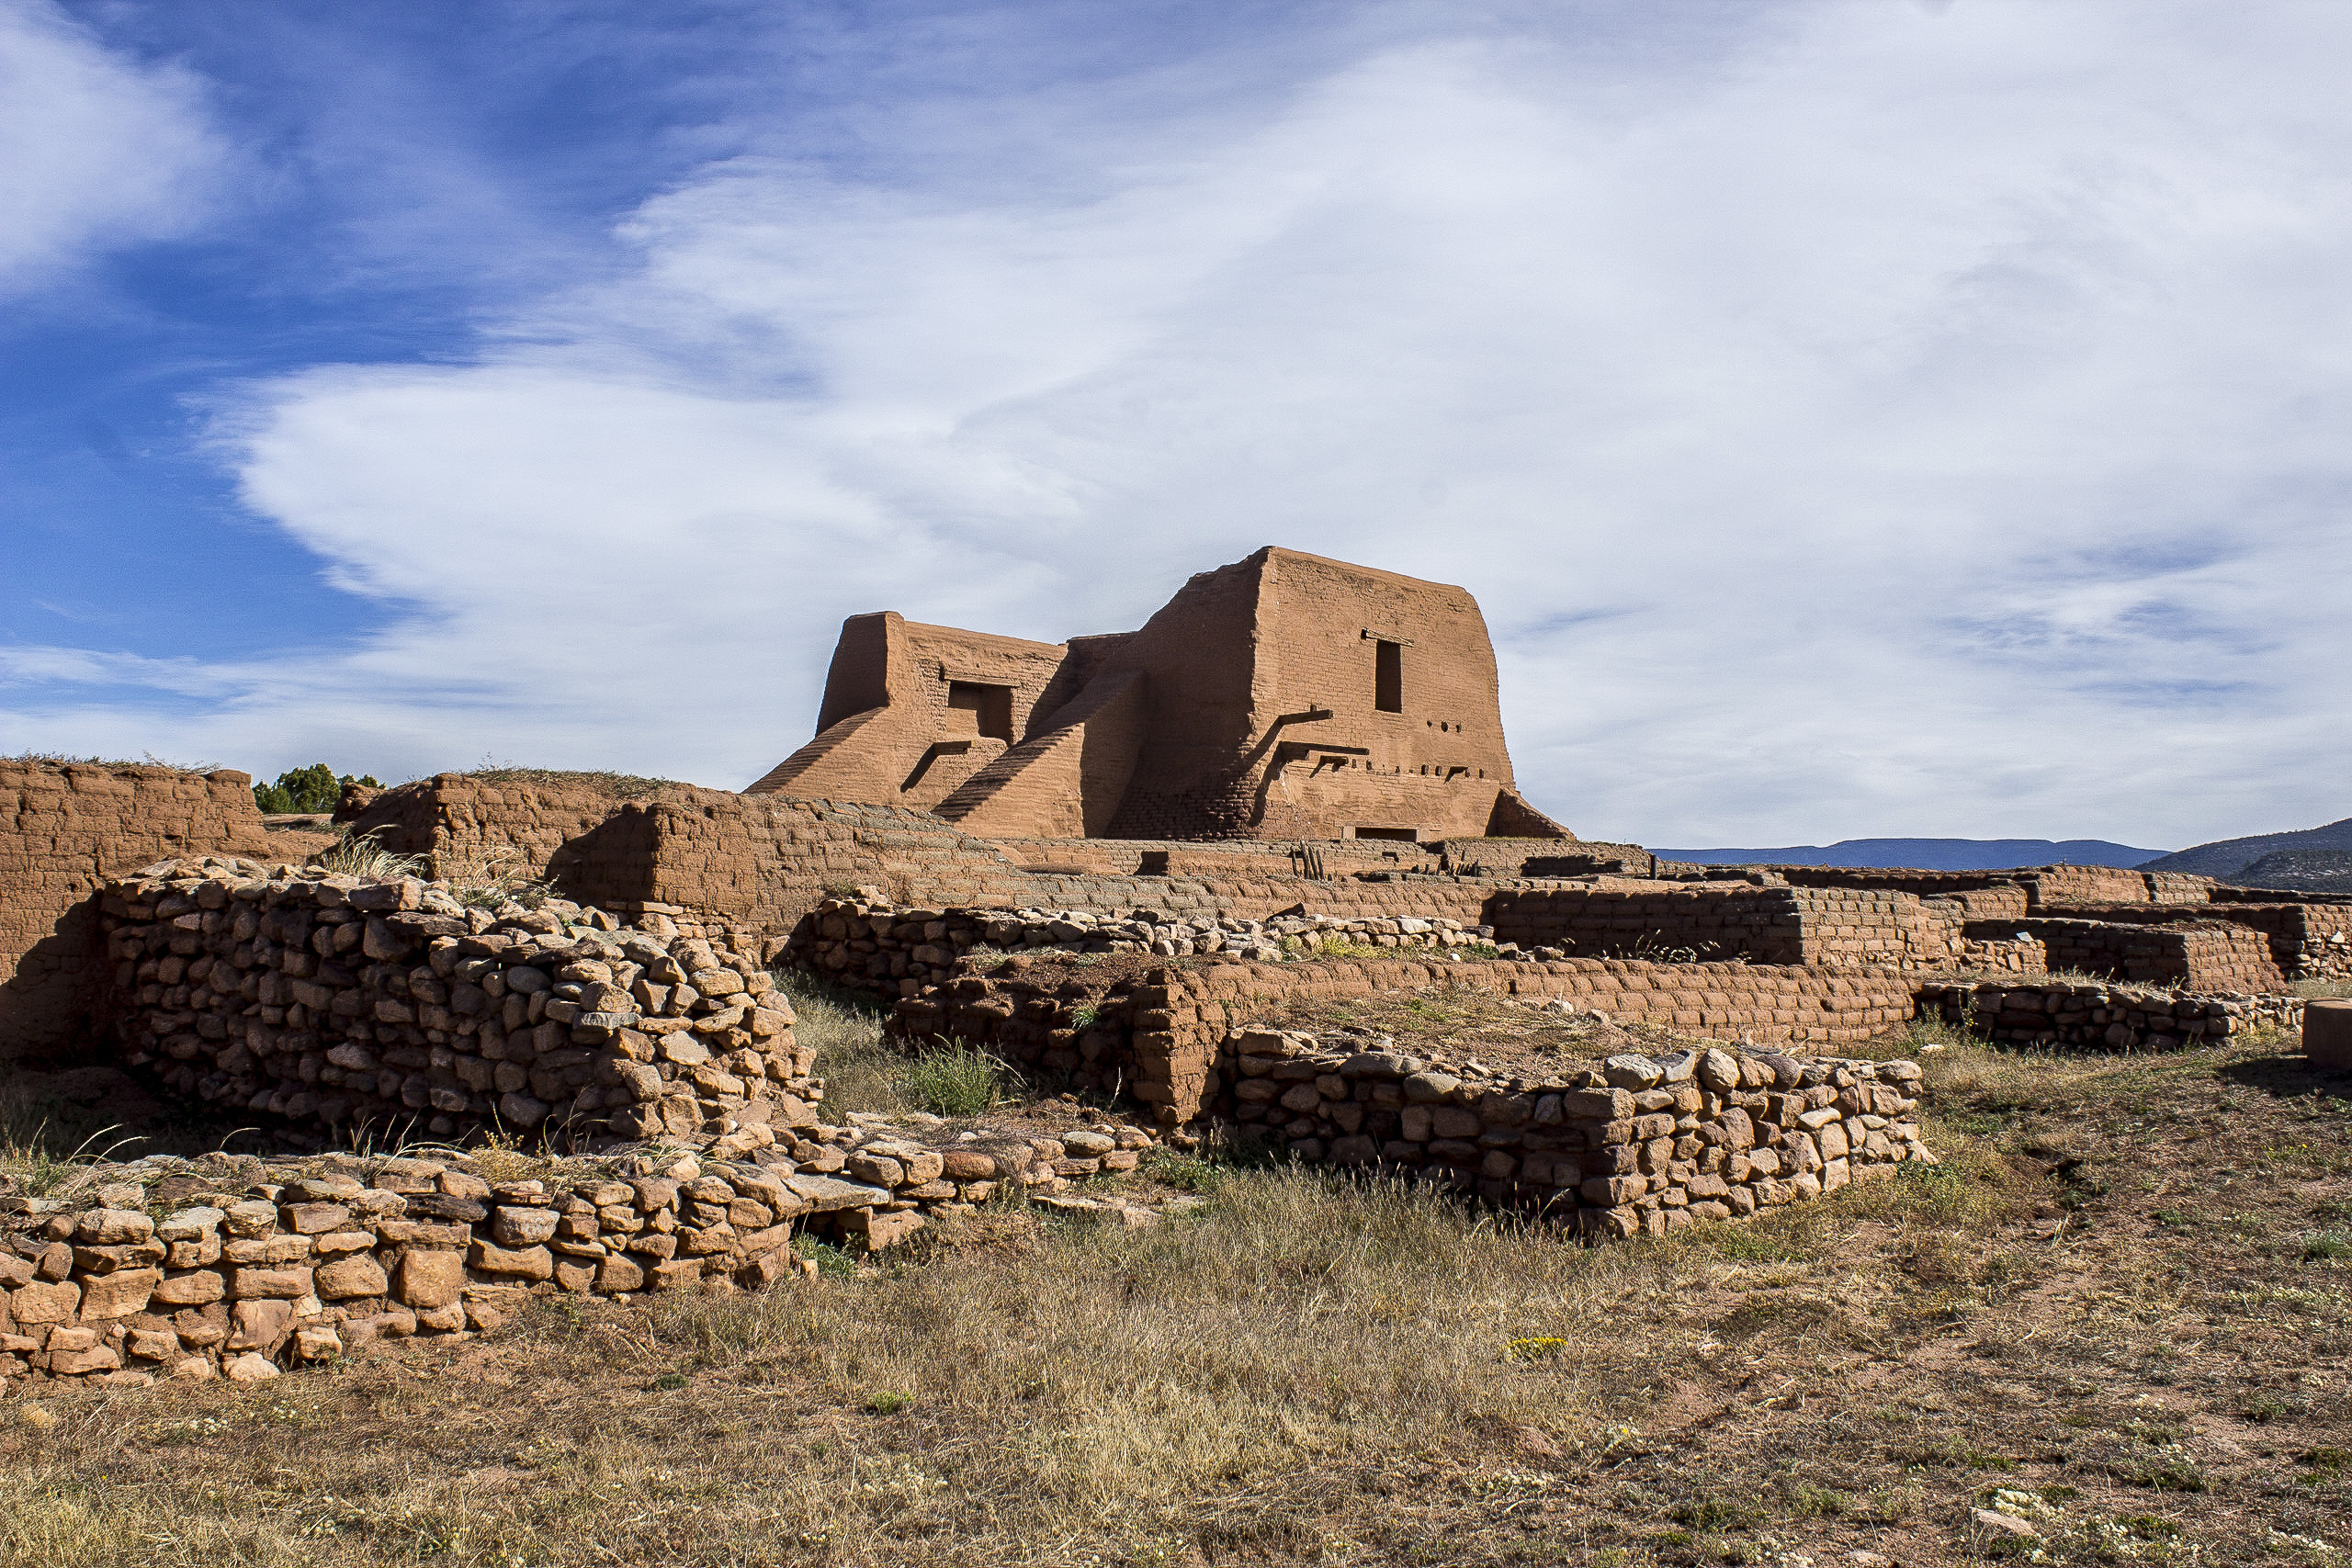 Pecos Pueblo